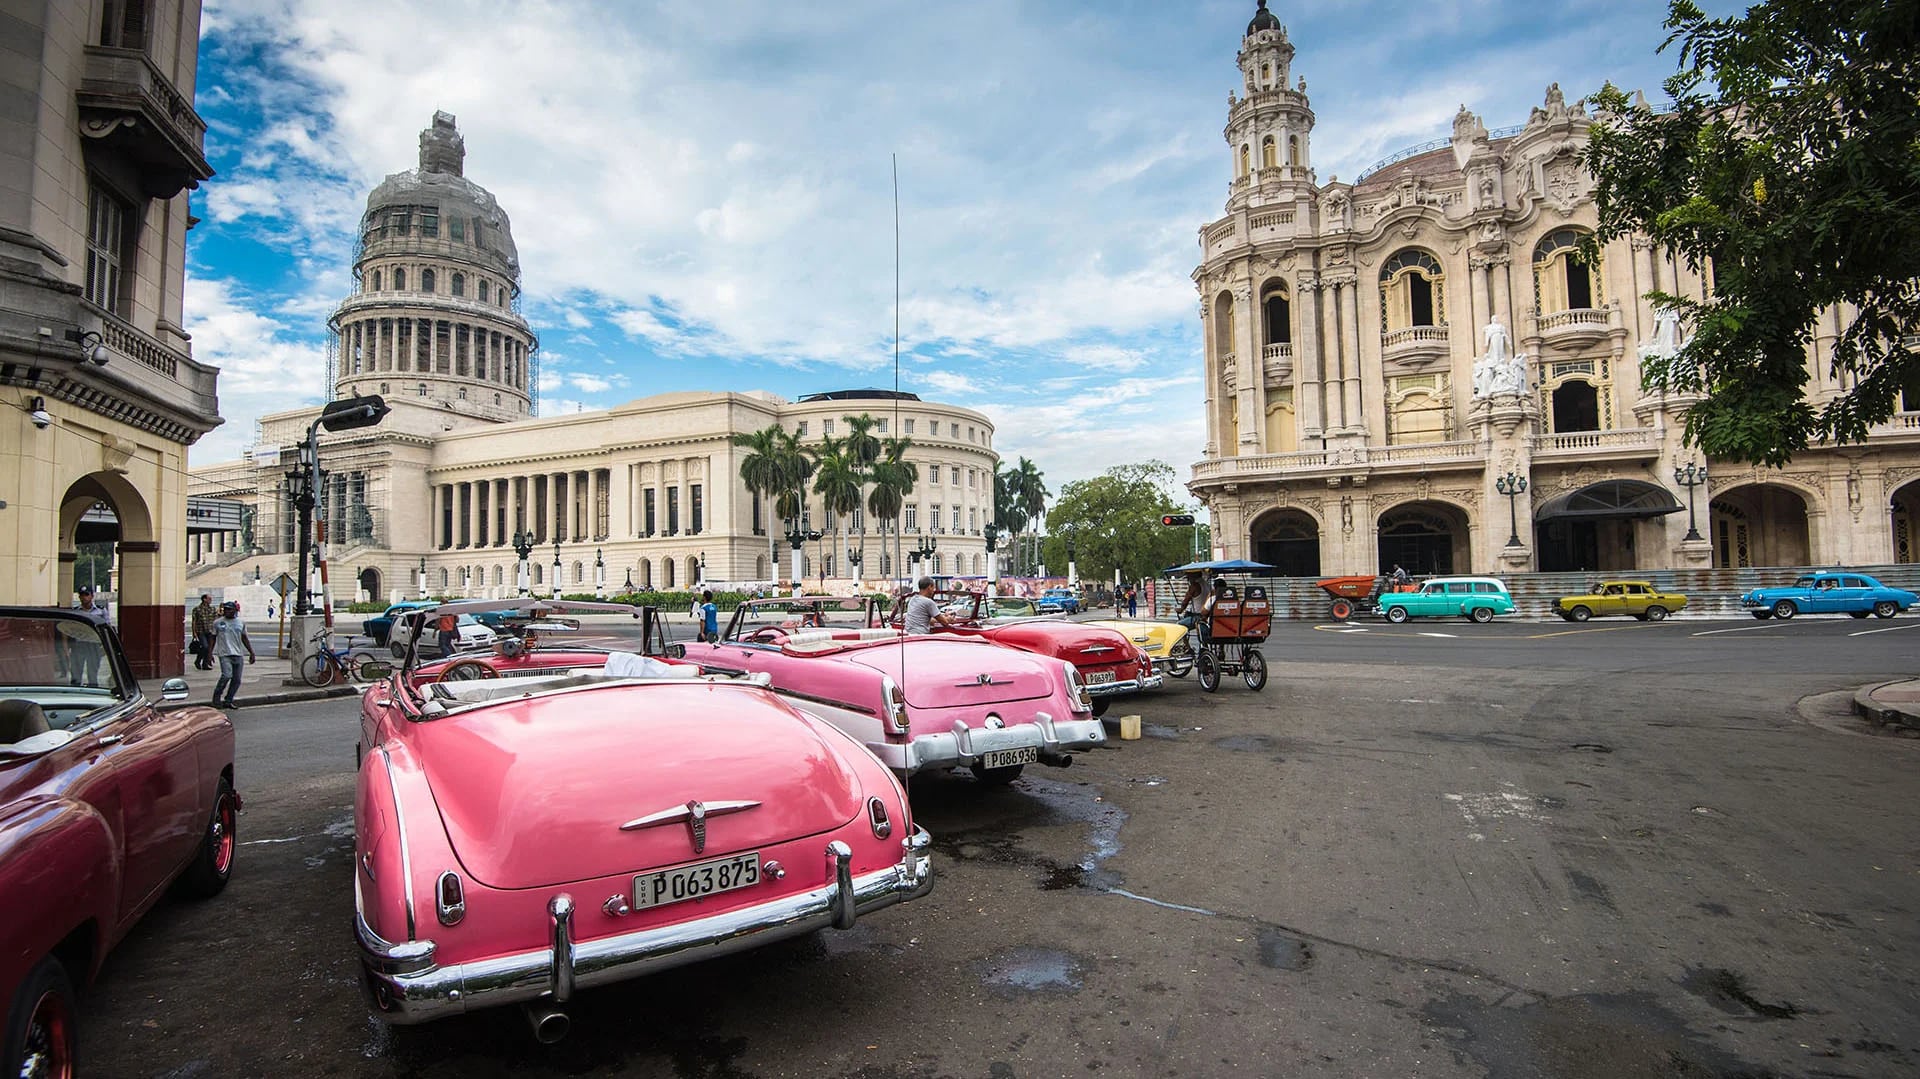 A casi 500 años de fundada, La Habana recibió su condición como una de las siete ciudades maravillas del mundo moderno.